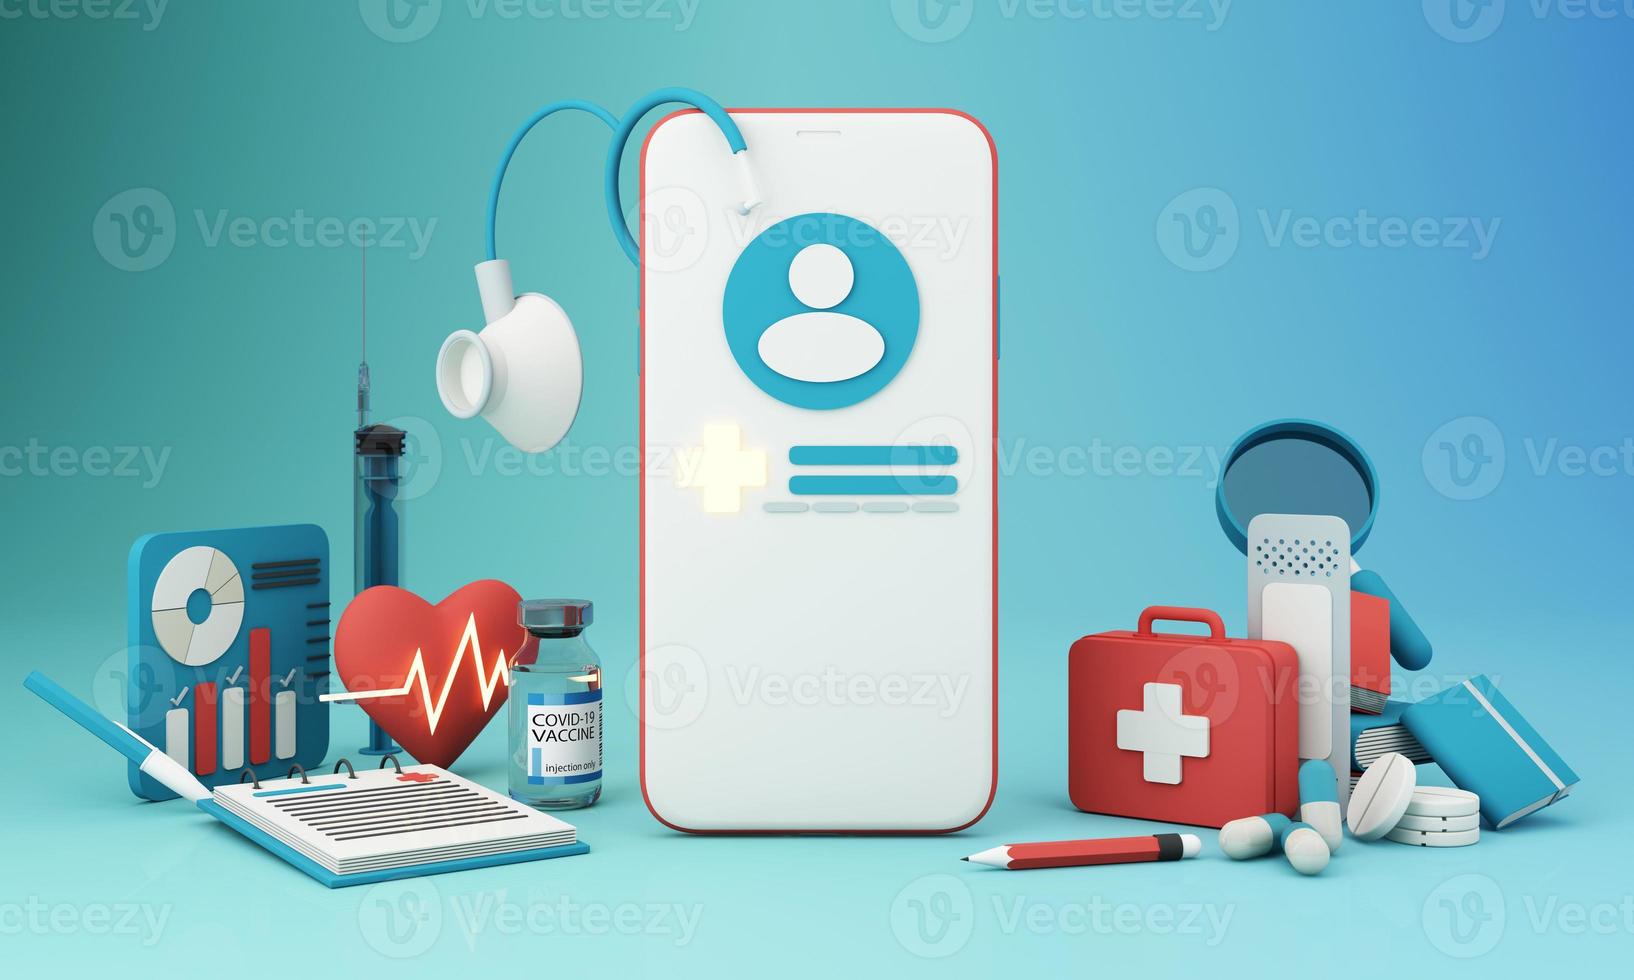 ziektekostenverzekering concept met woorden dekking, bescherming, risico en veiligheid online geneeskunde op een virtueel scherm en een cartoon houten hand aanraken van een knop, geïsoleerd op blauwe achtergrond 3D-rendering foto